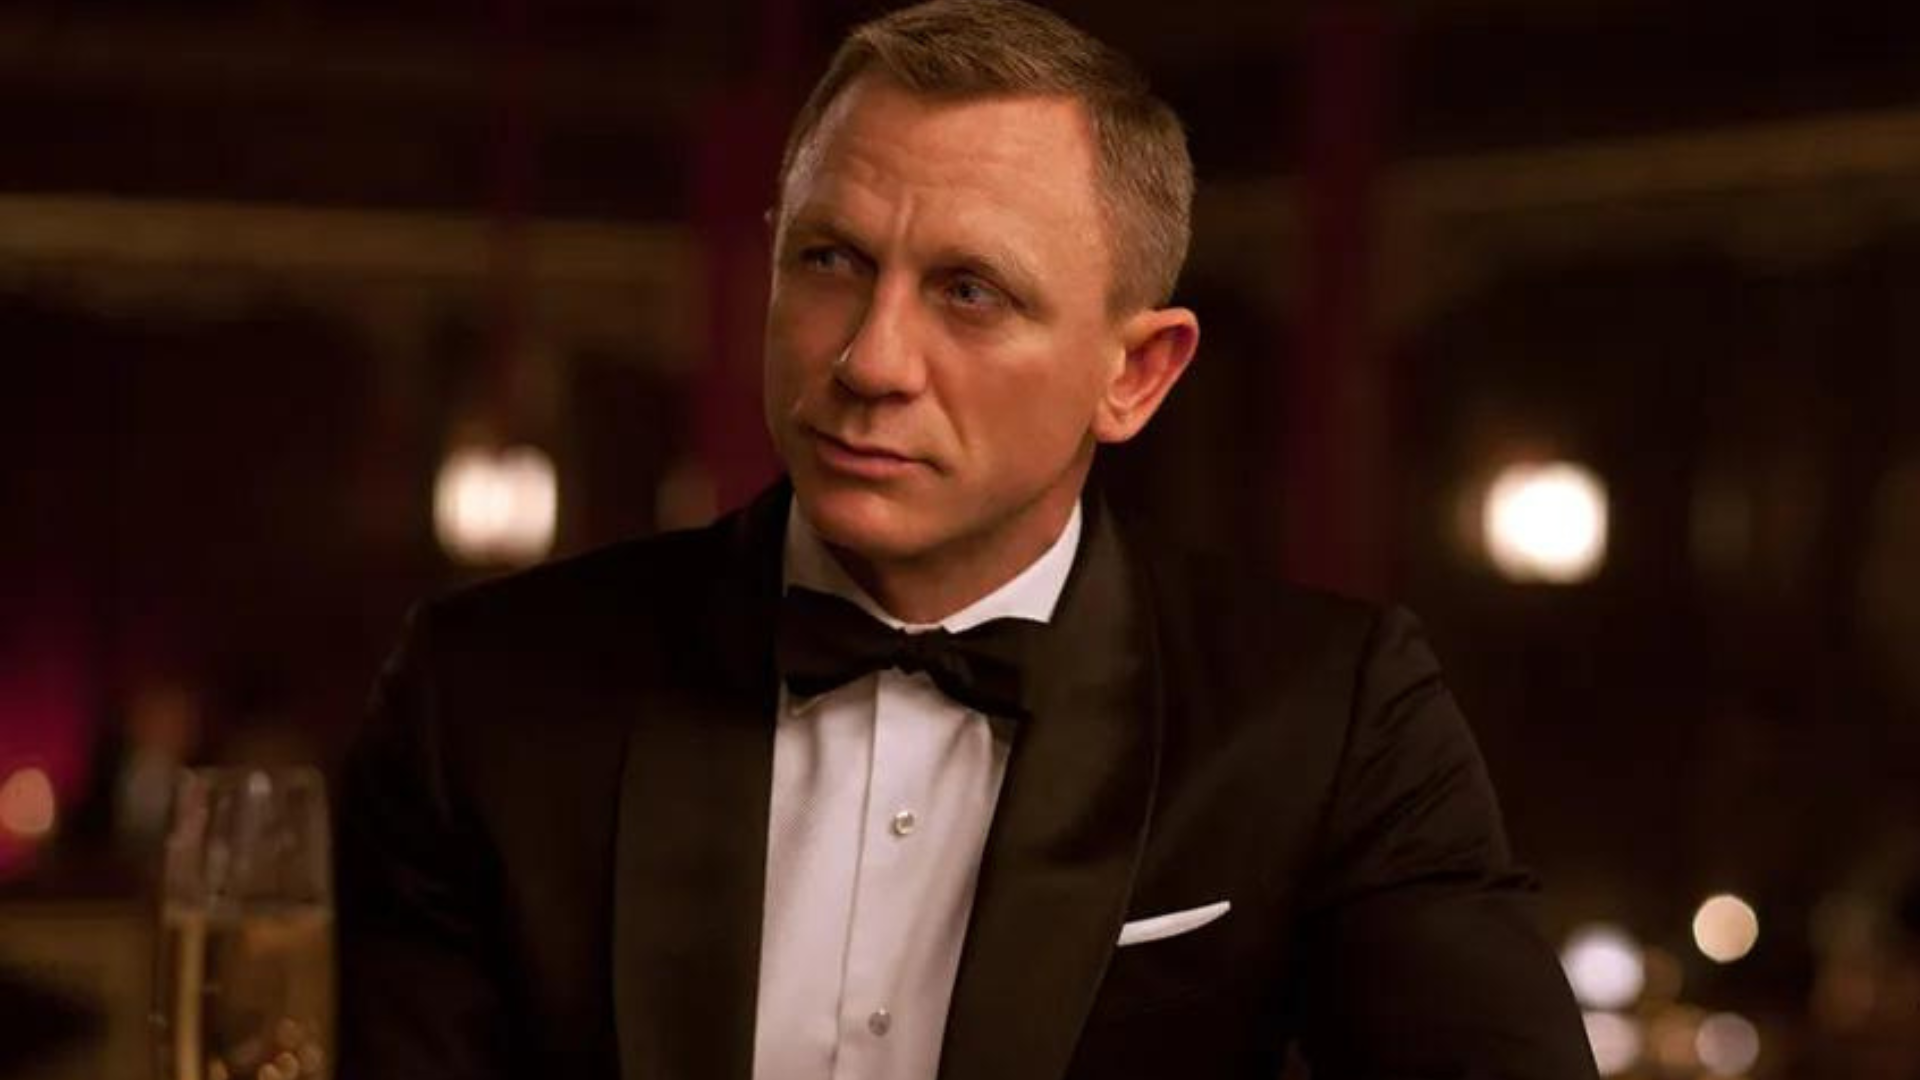 Busca por novo James Bond vai demorar, afirma produtora de 007